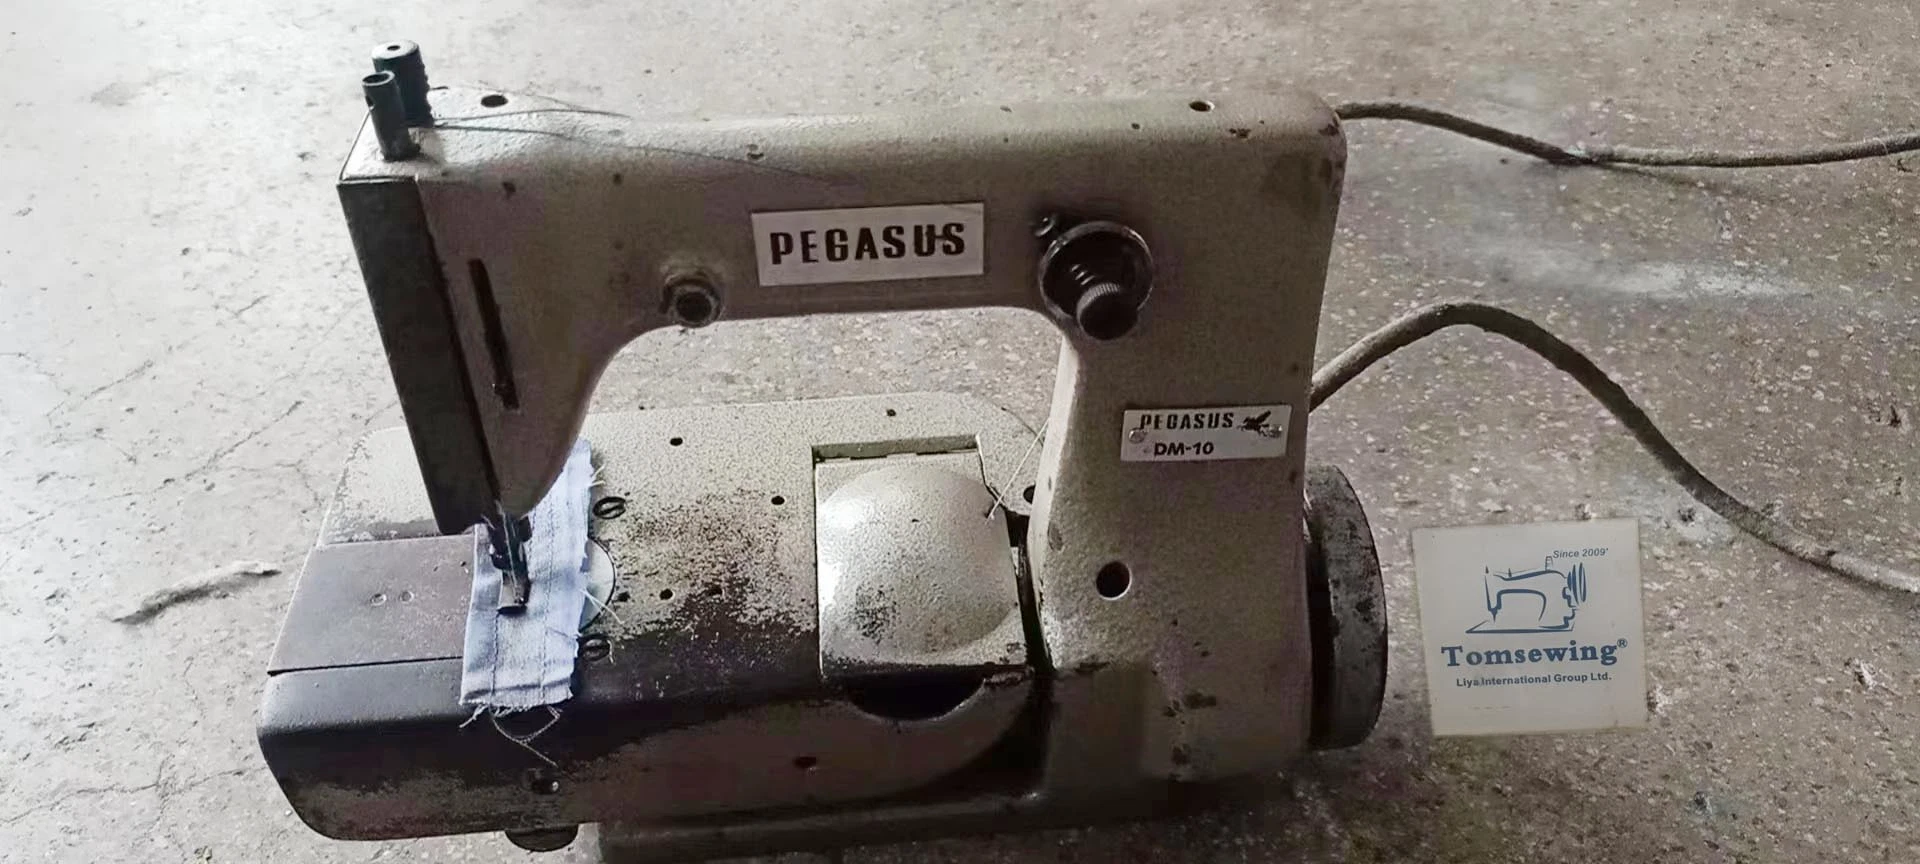 Utiliser une machine à coudre de gant de seconde main Chainstitch Pegasus DM-10 MAQUINAS DE Coser Industriales Usedas